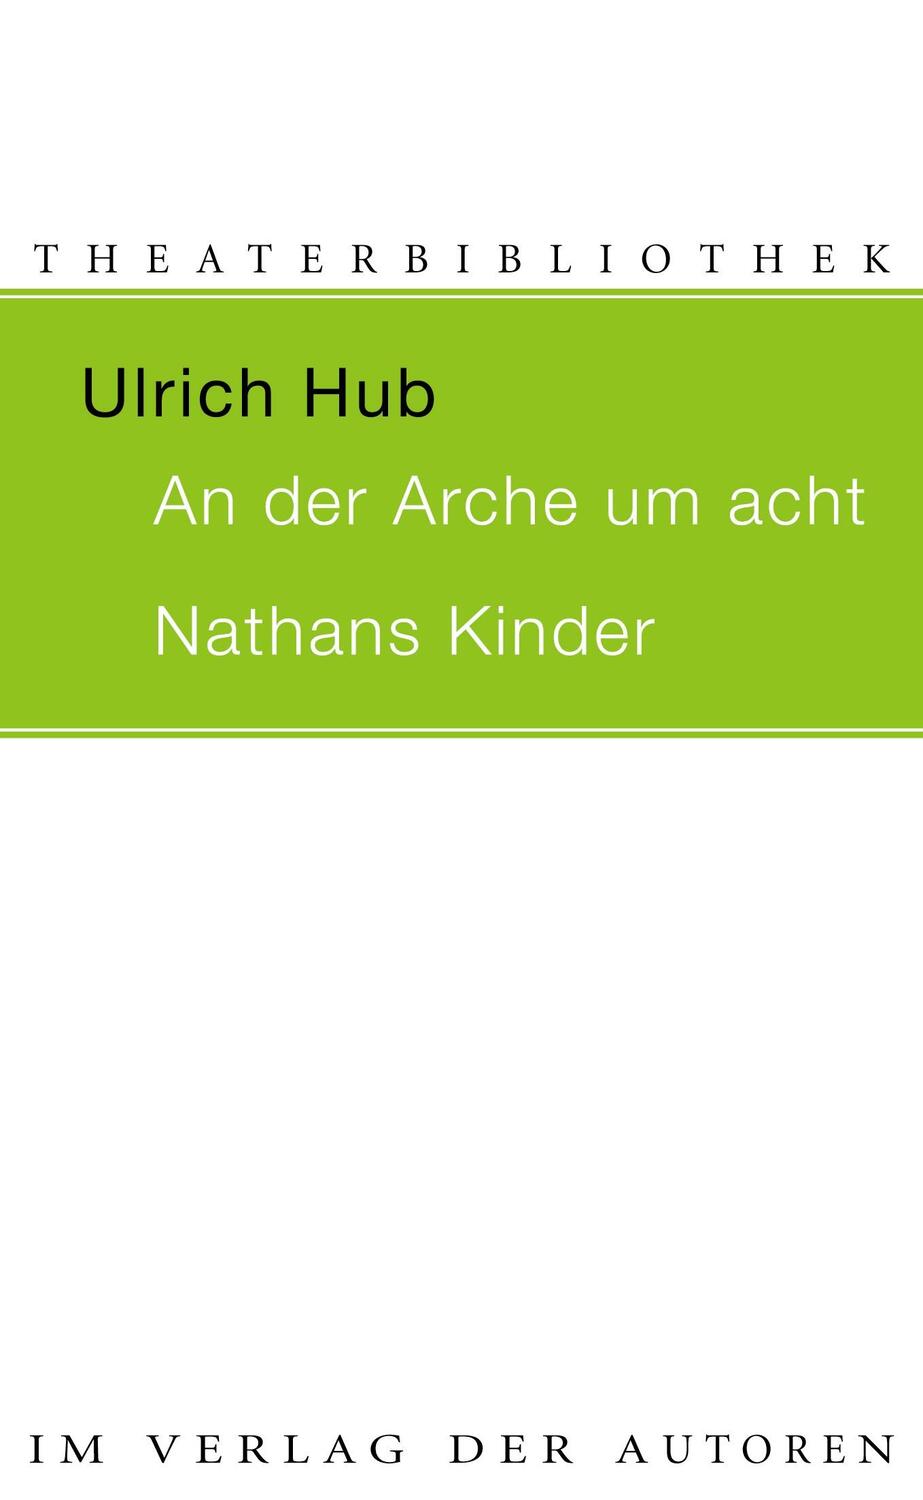 AN DER ARCHE UM ACHT / NATHANS KINDER - Hub, Ulrich